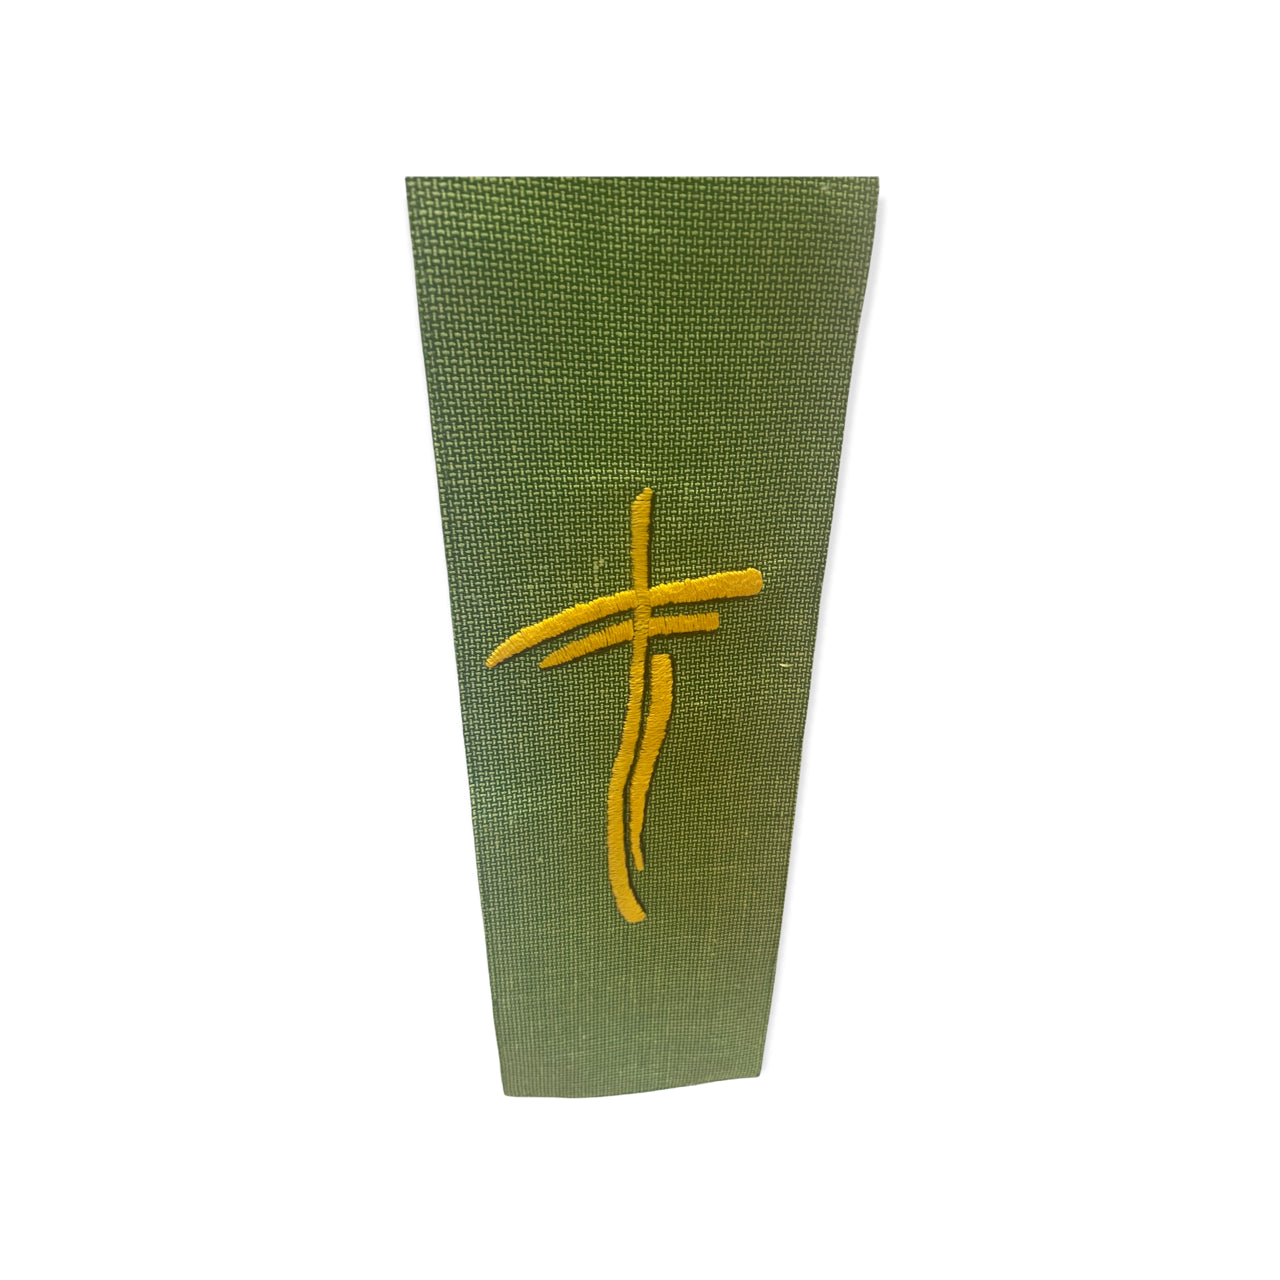 Stola per Sacerdote verde con croci ricamate a mano